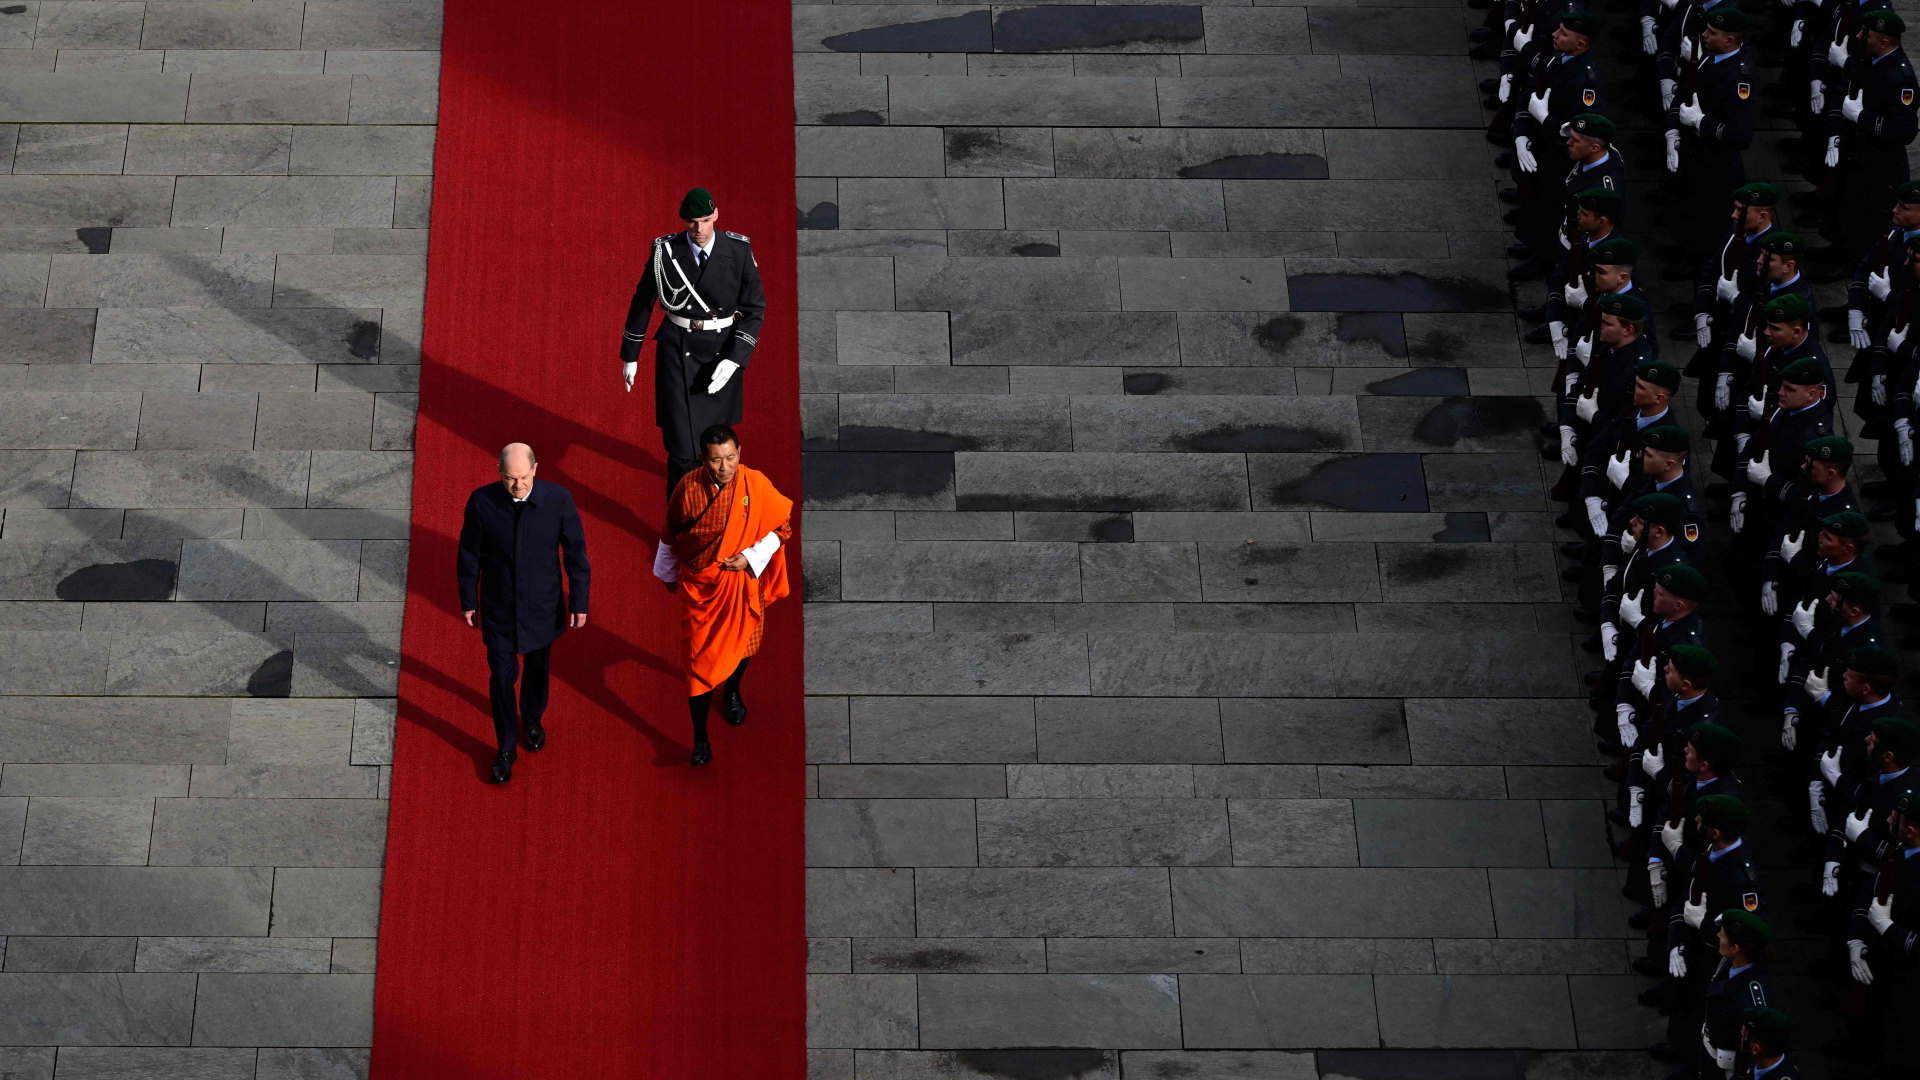 Olaf Scholz, Bundeskanzler, und Lotay Tshering, Bhutans Premierminister, laufen über den roten Teppich während einer Begrüßungszeremonie im Kanzleramt in Berlin. | AFP